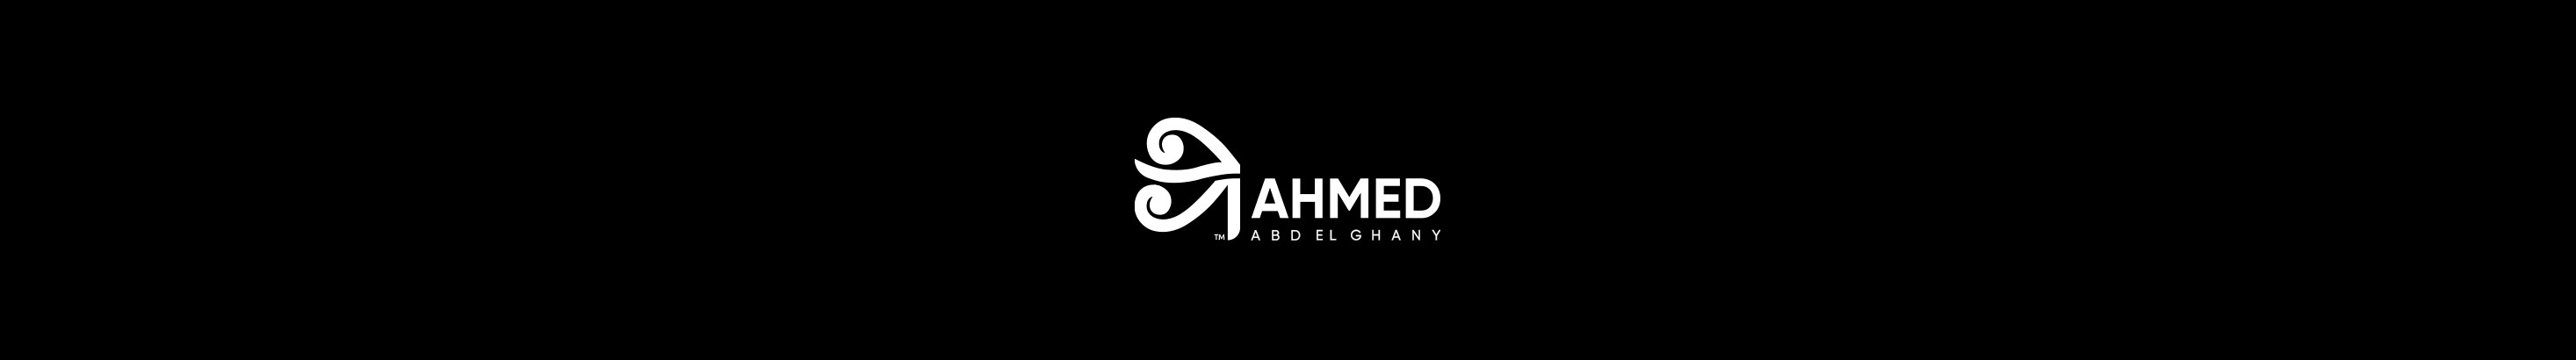 Ahmed Abd El Ghany のプロファイルバナー